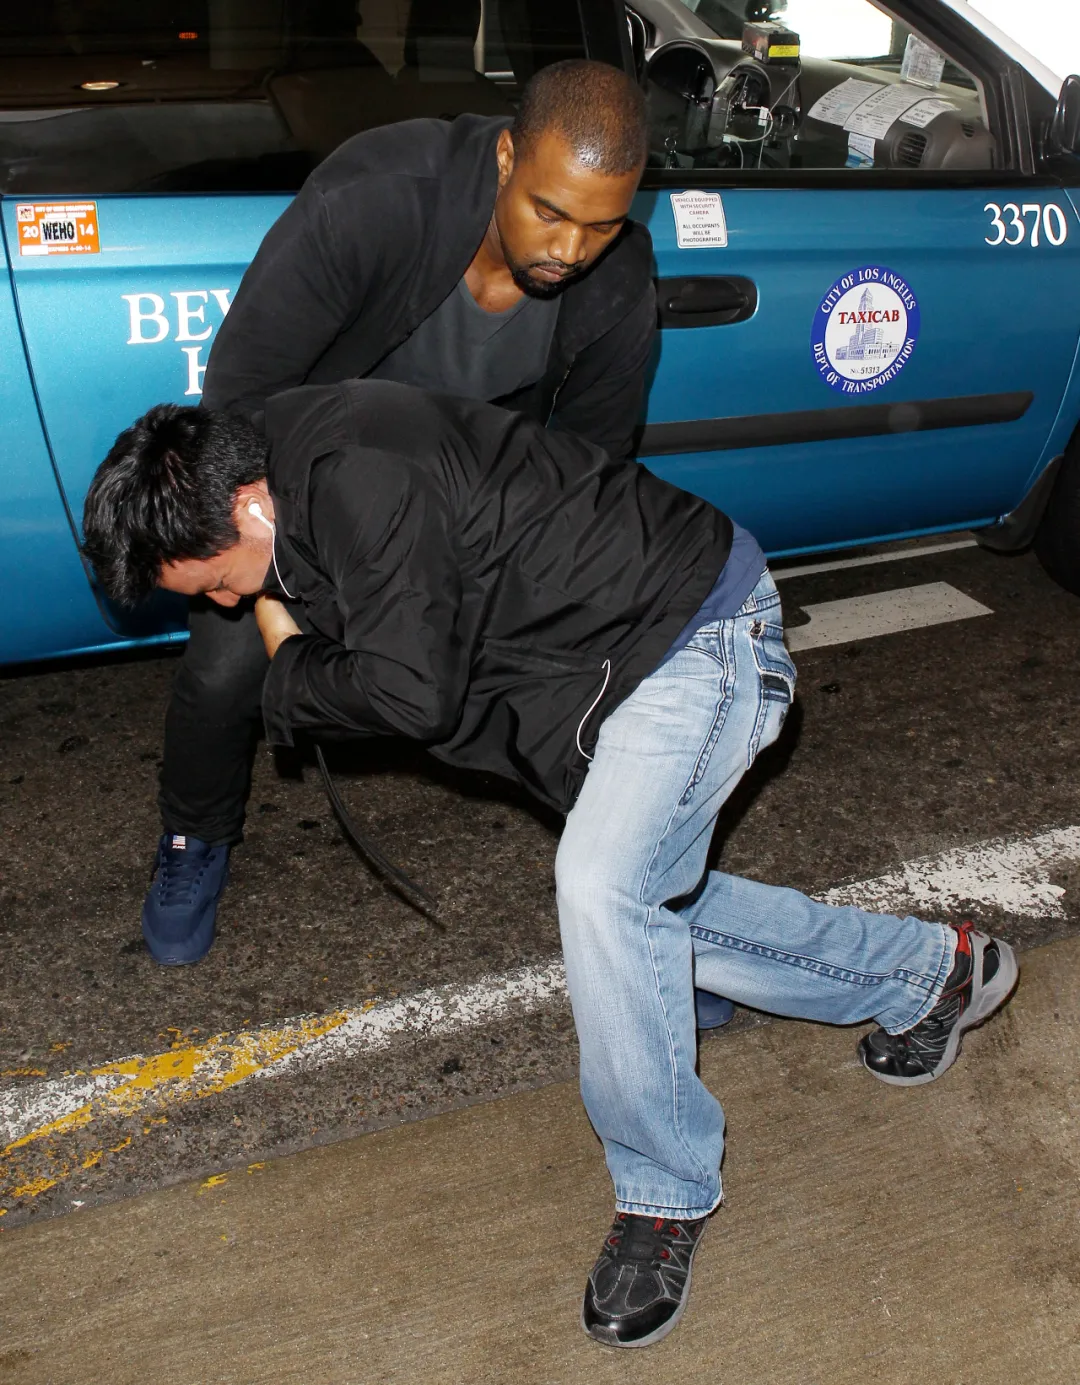 跟风诺米？侃爷Kanye穿「始祖鸟」在迪士尼打人，被抓进警察局了...(/doge)